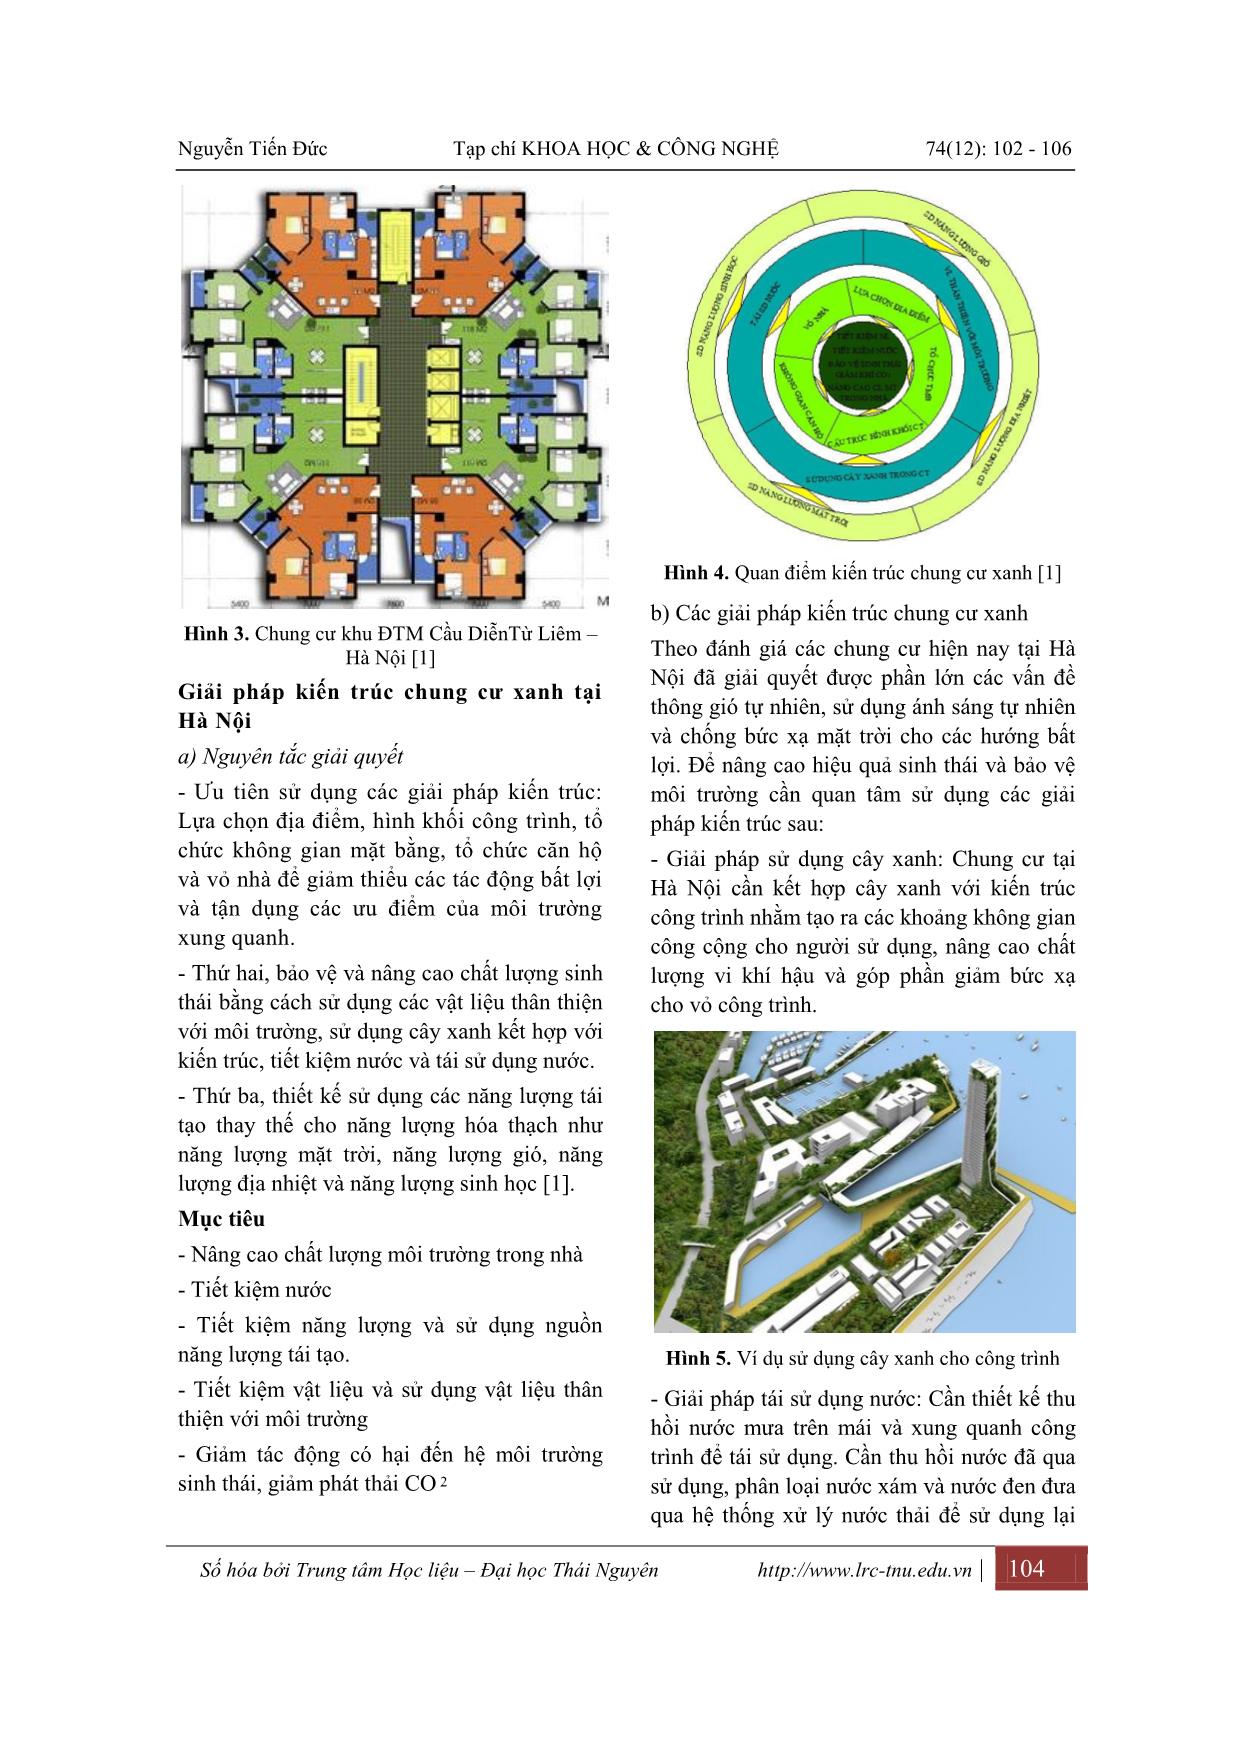 Hiện trạng và giải pháp kiến trúc chung cư xanh tại Hà Nội trang 3